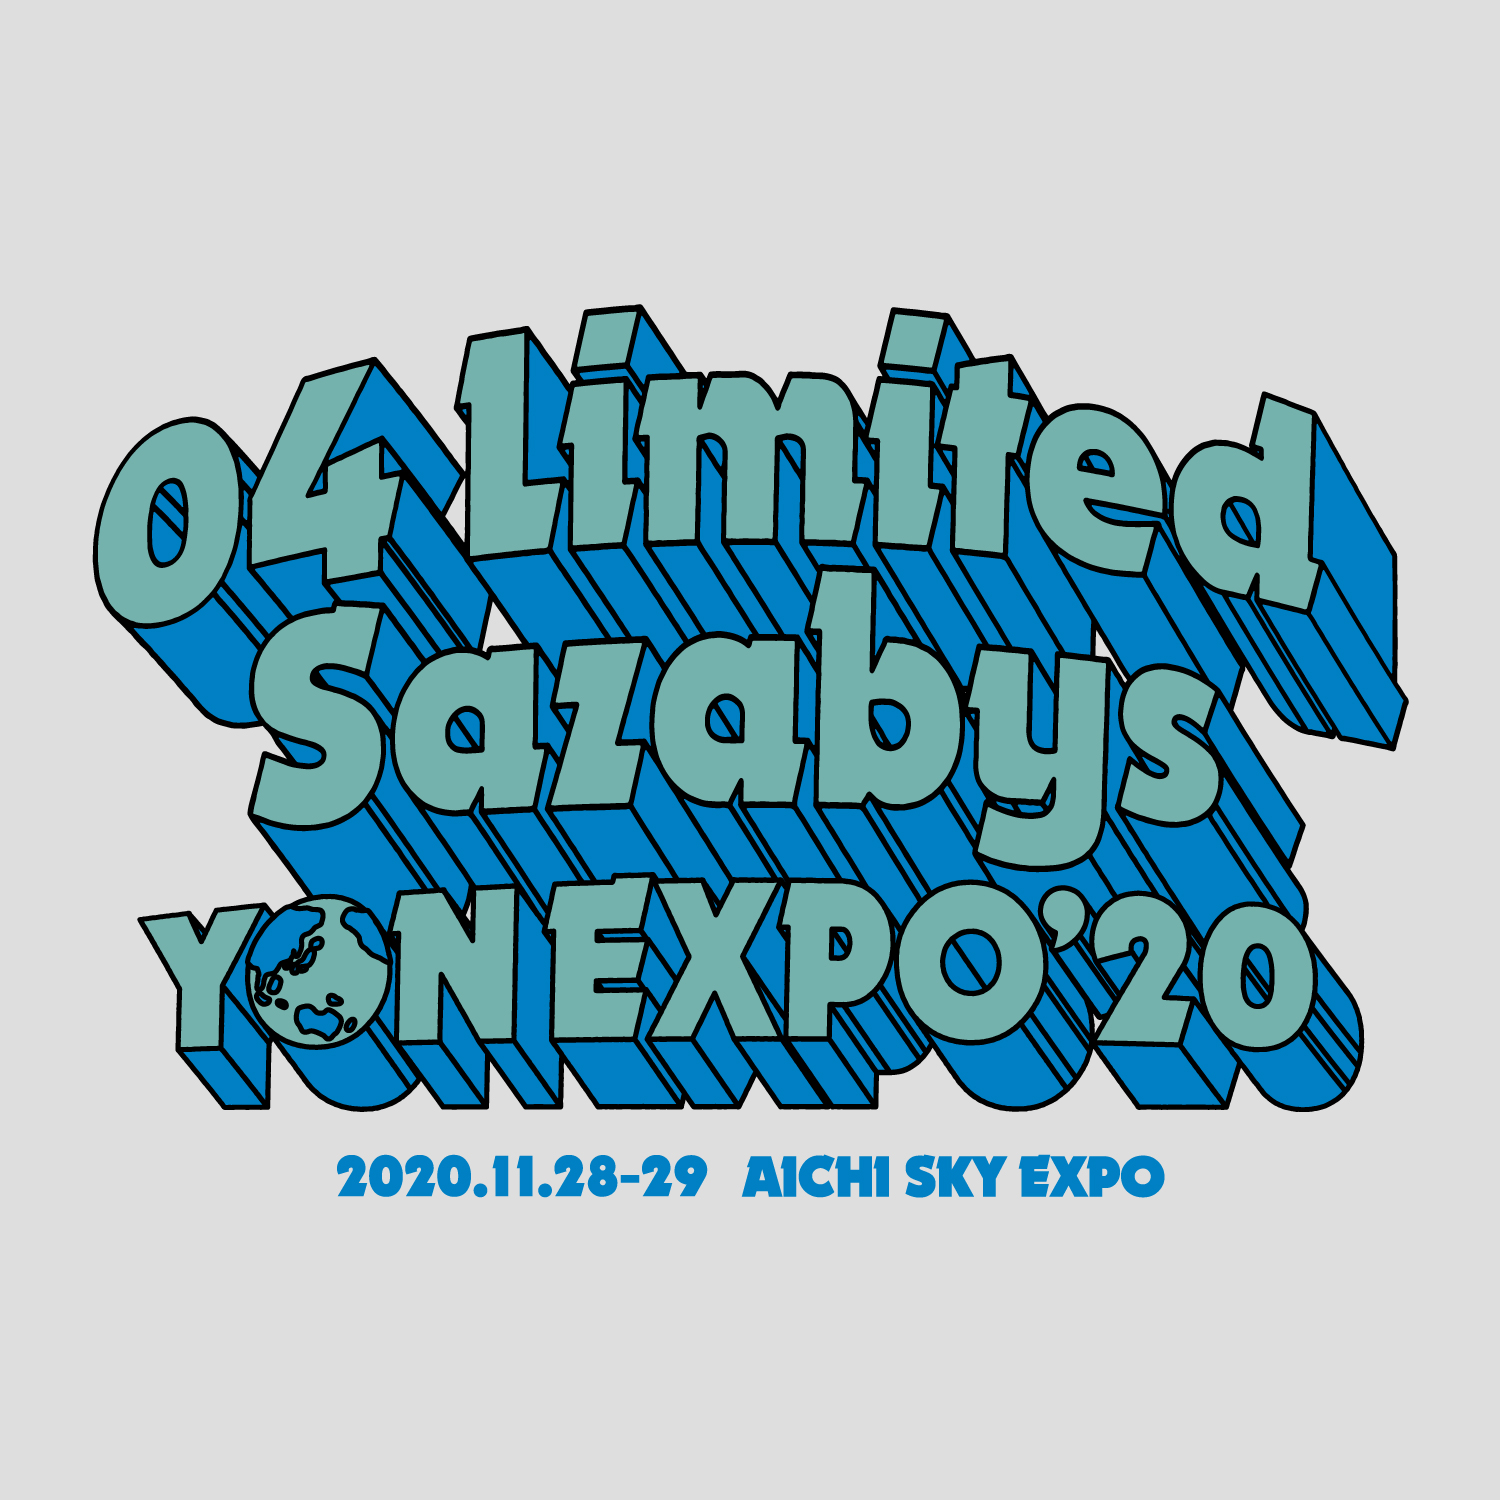 【愛知】YON EXPO’20 (Aichi Sky Expo)